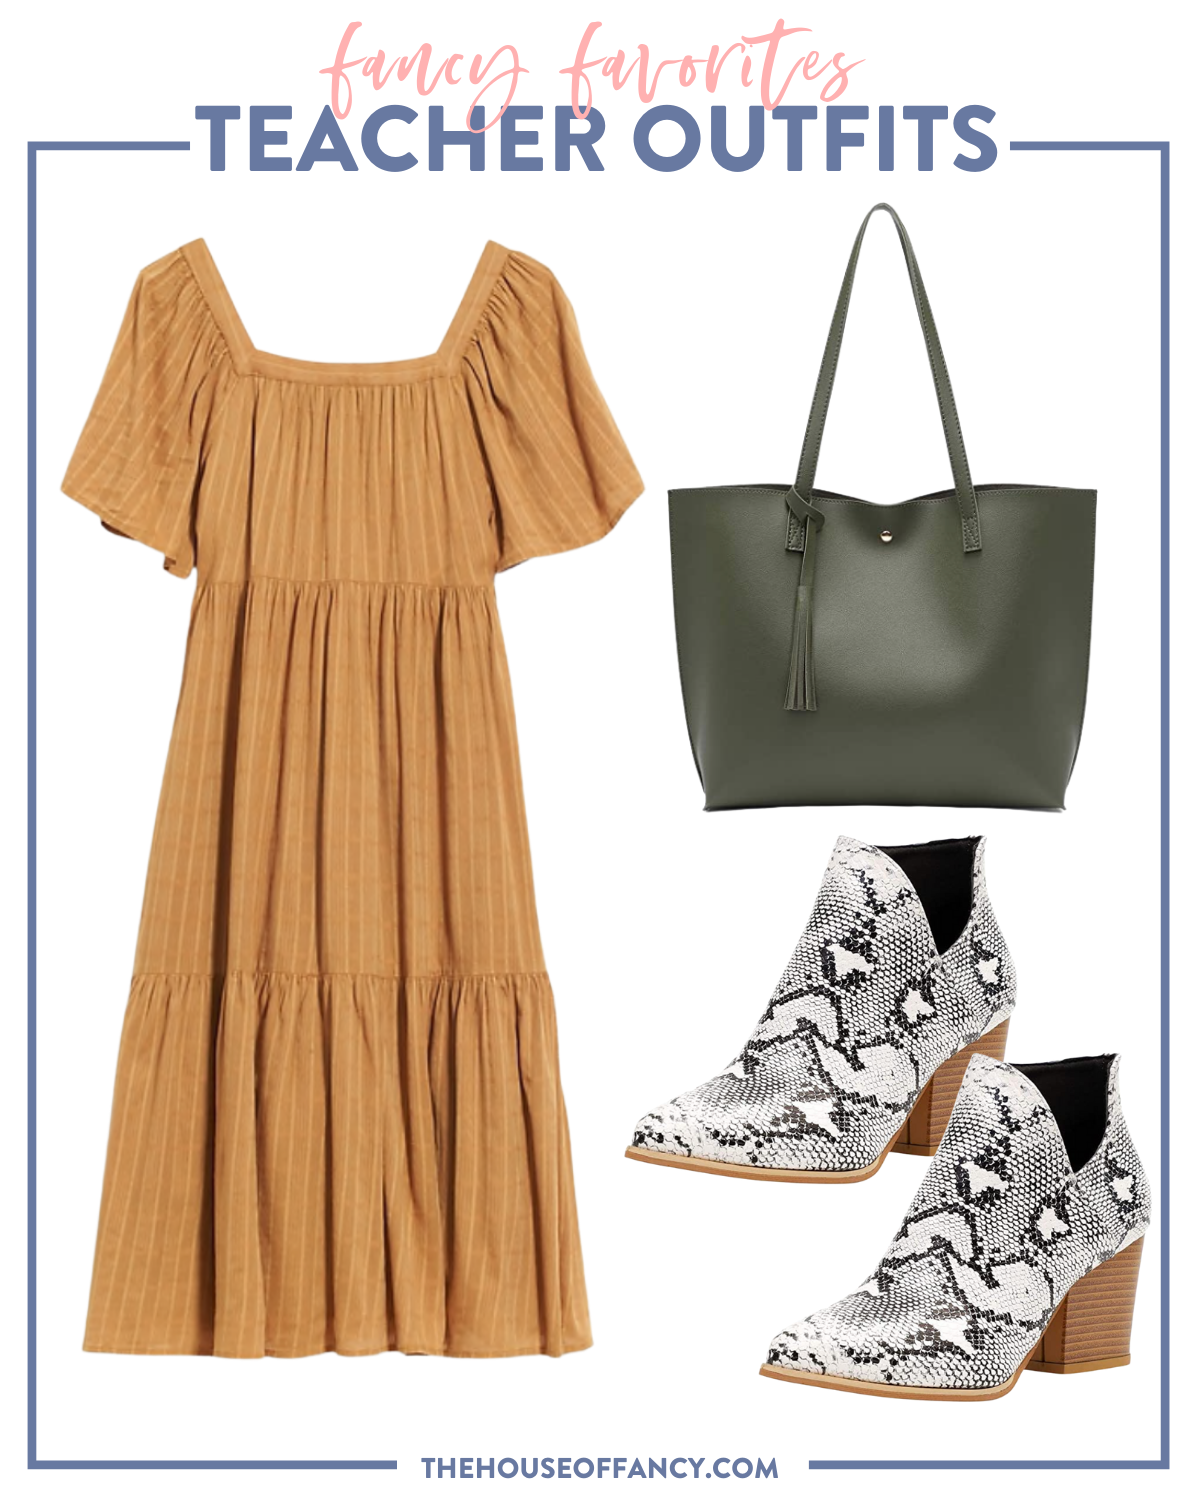 10 Easy Teacher Outfits